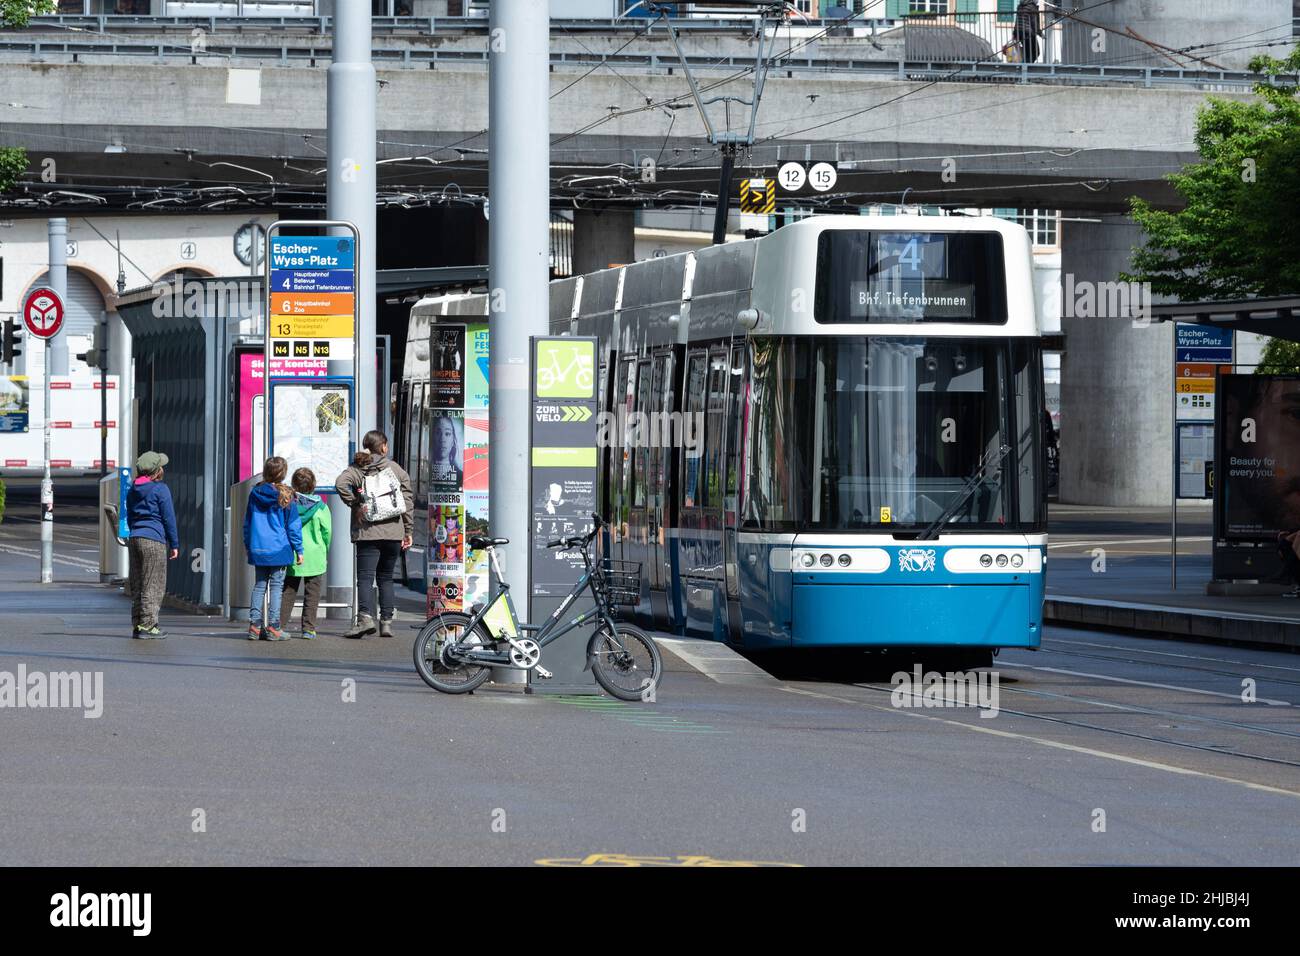 Zurich, Switzerland - May 23rd 2021: A modern tram car Flexity stopping at Escher-Wyss-Platz Stock Photo